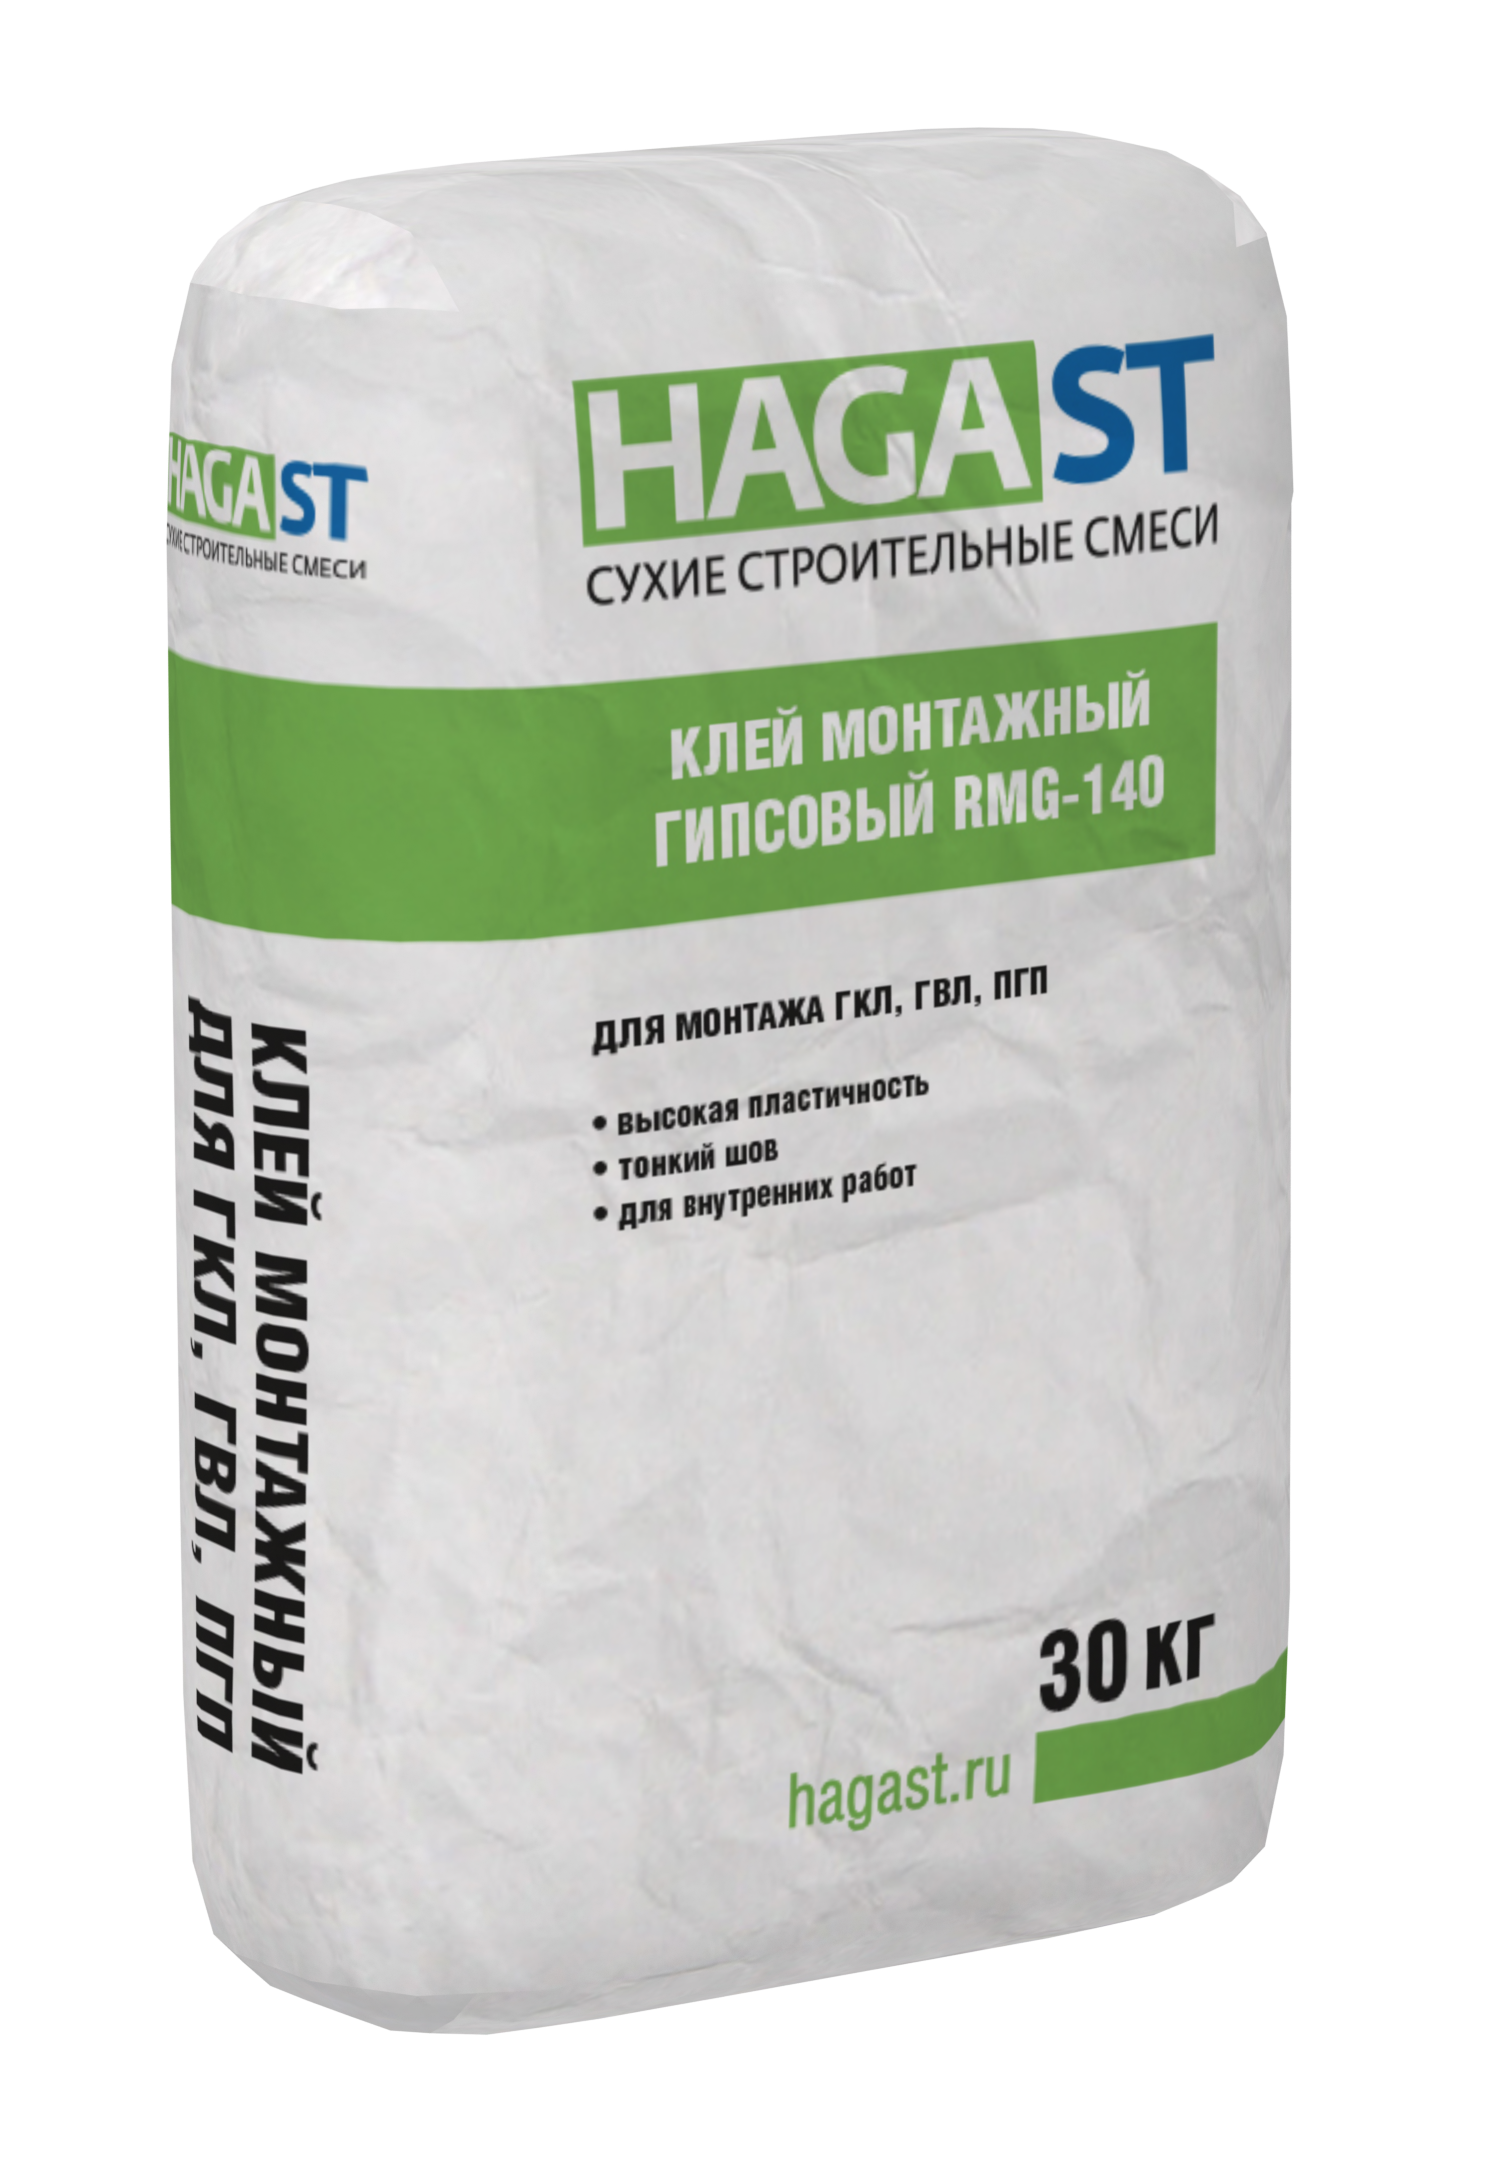 Клей монтажный гипсовый HAGAST RMG-140